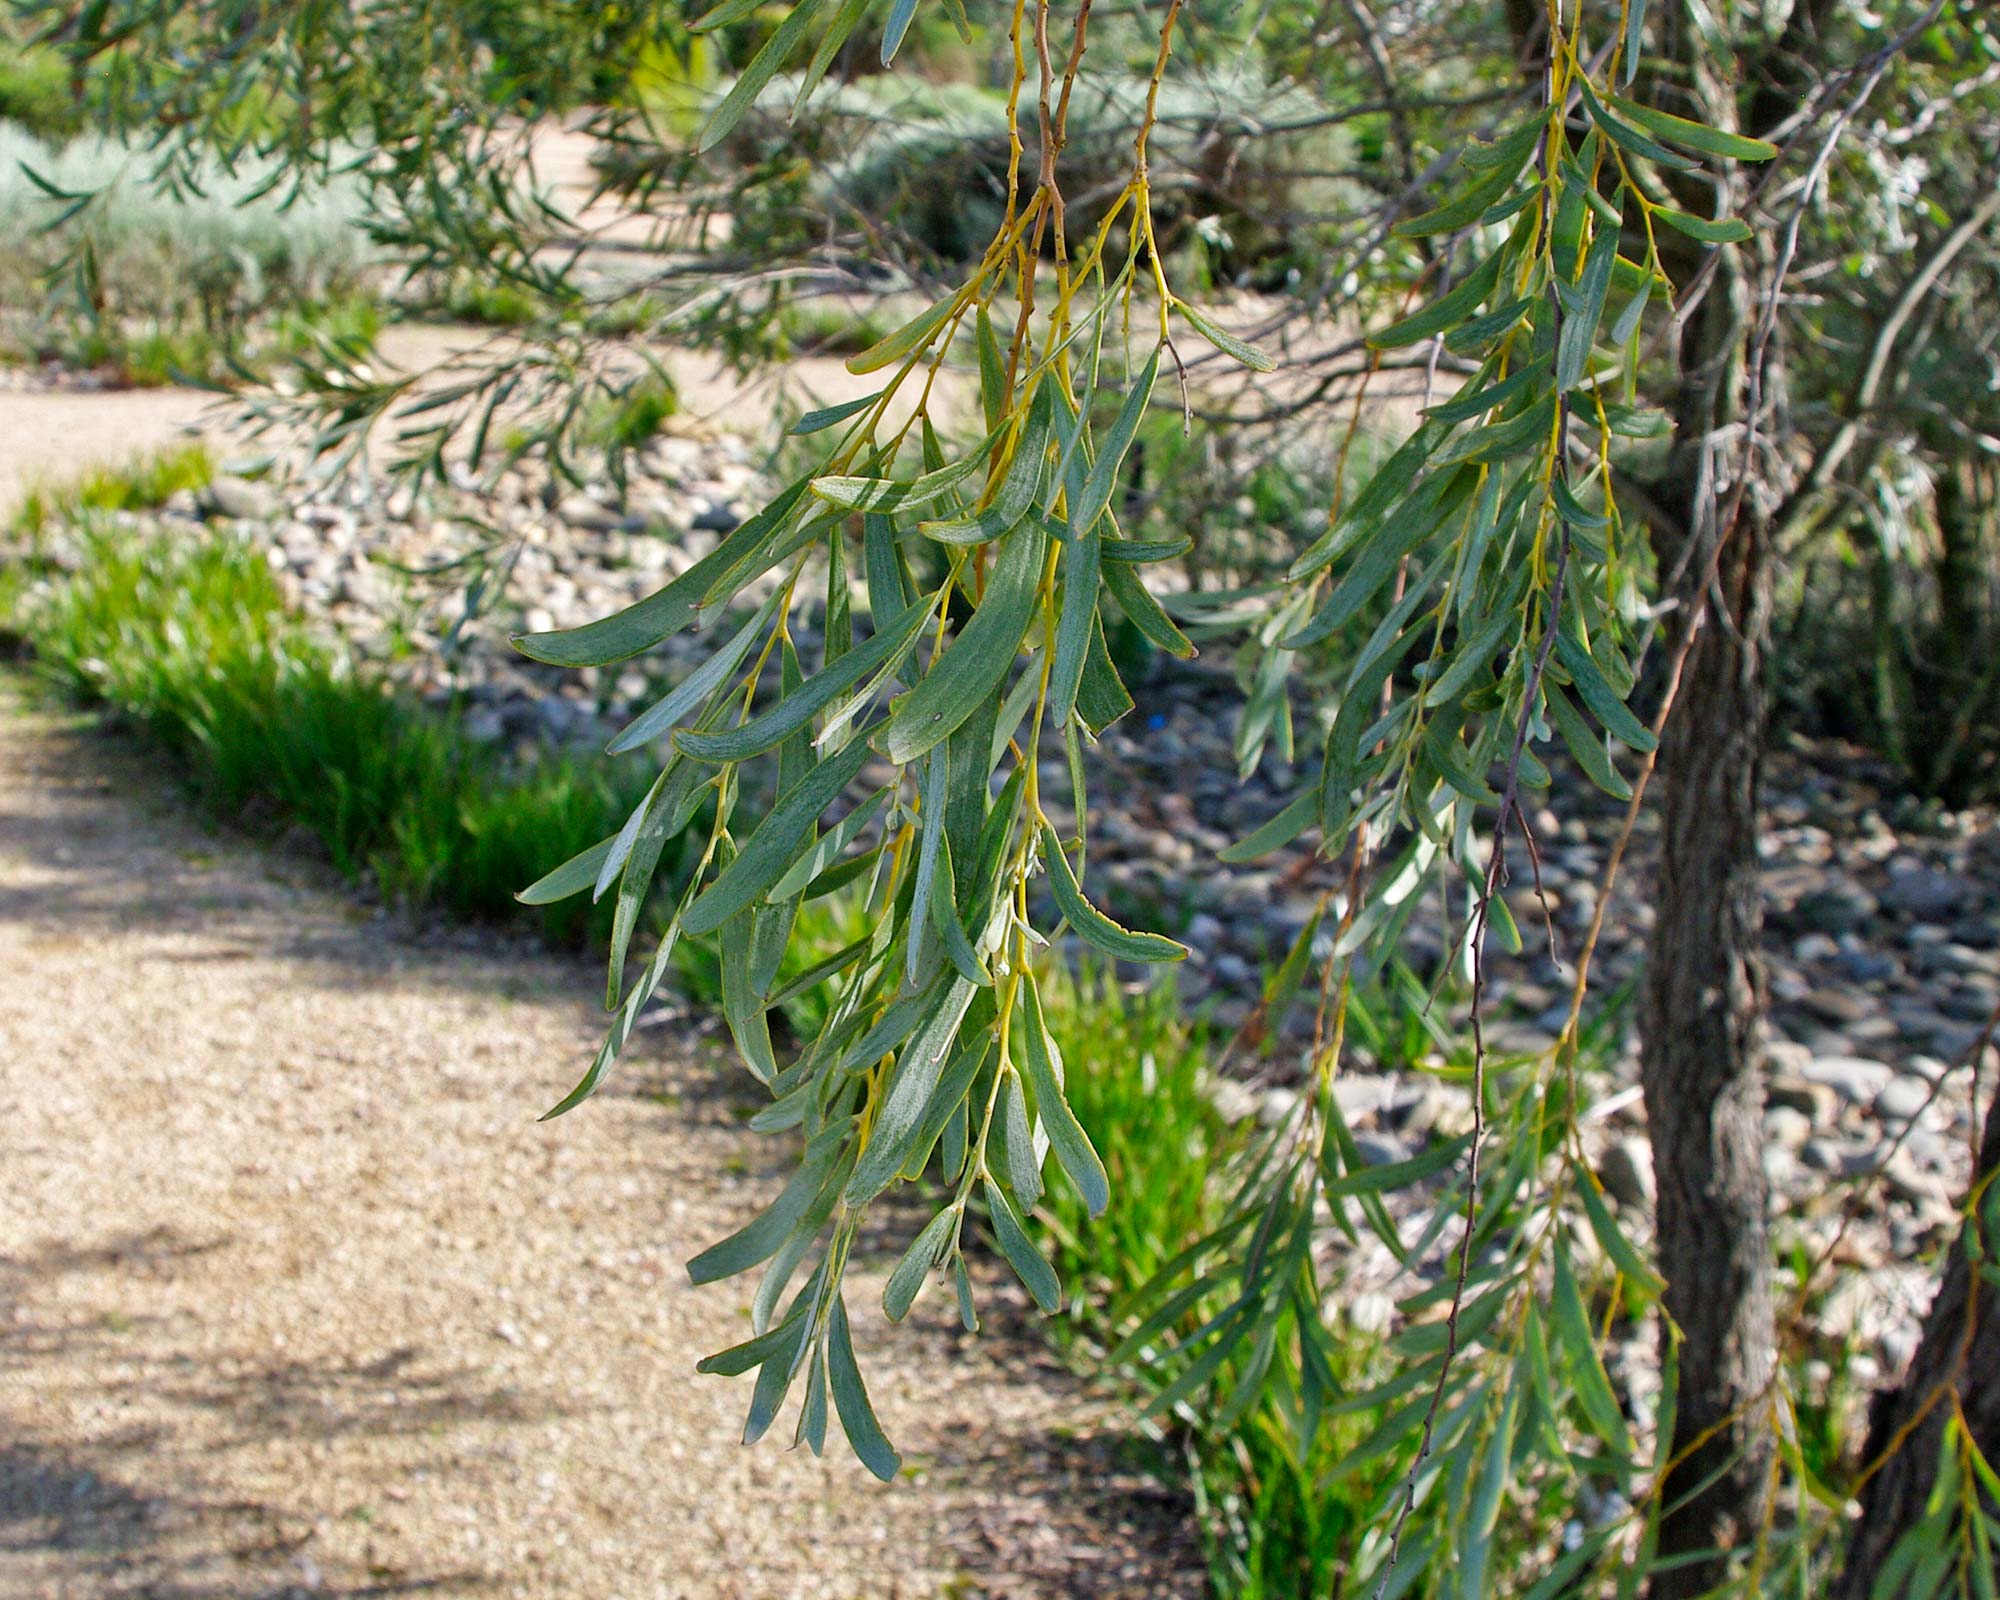 Acacia pendula foliage